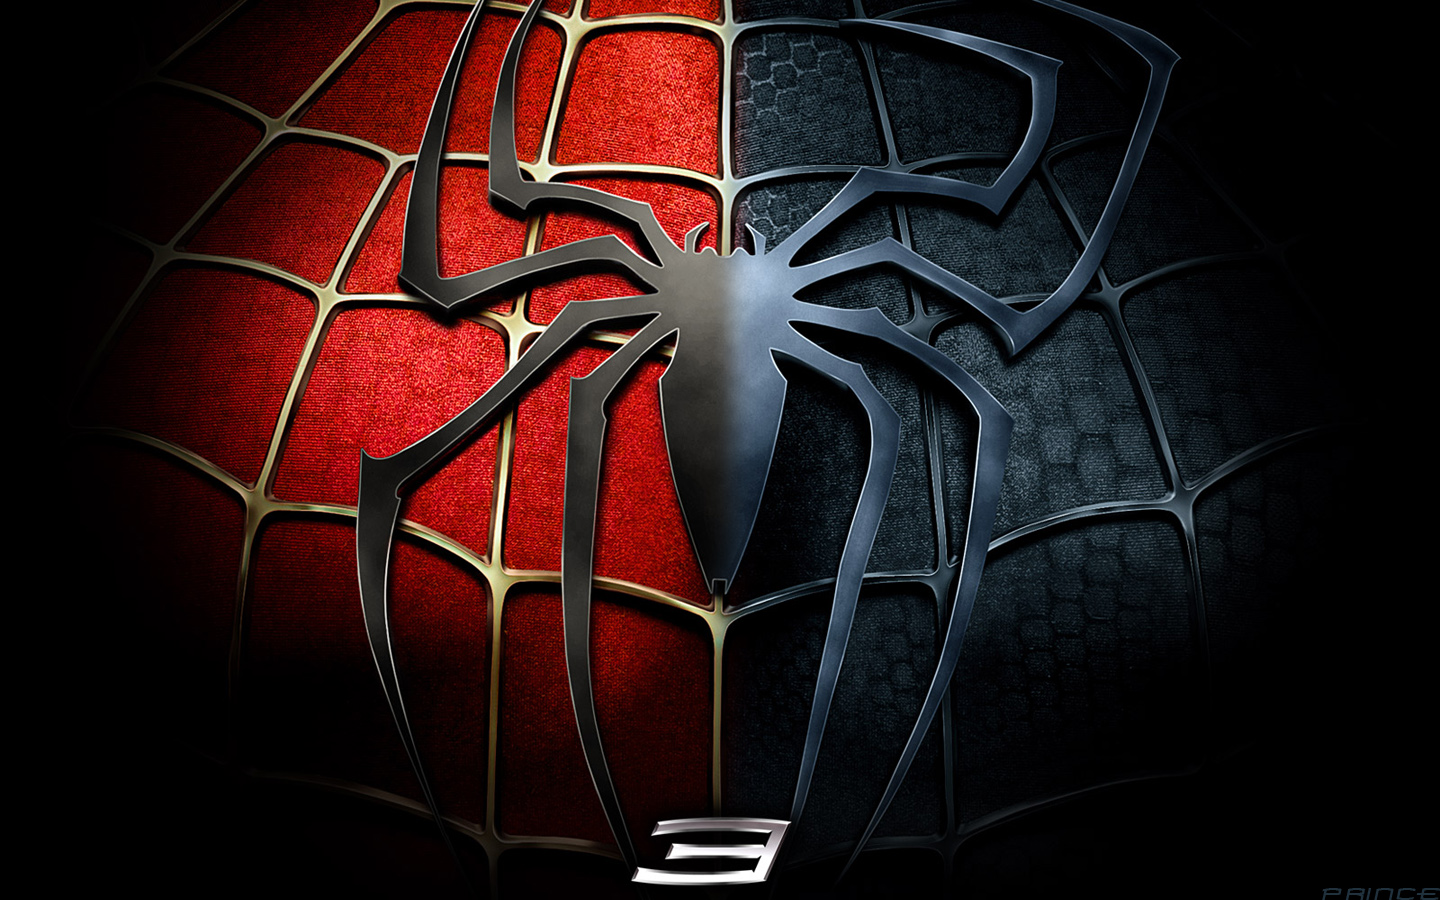 Spiderman 3 red n black